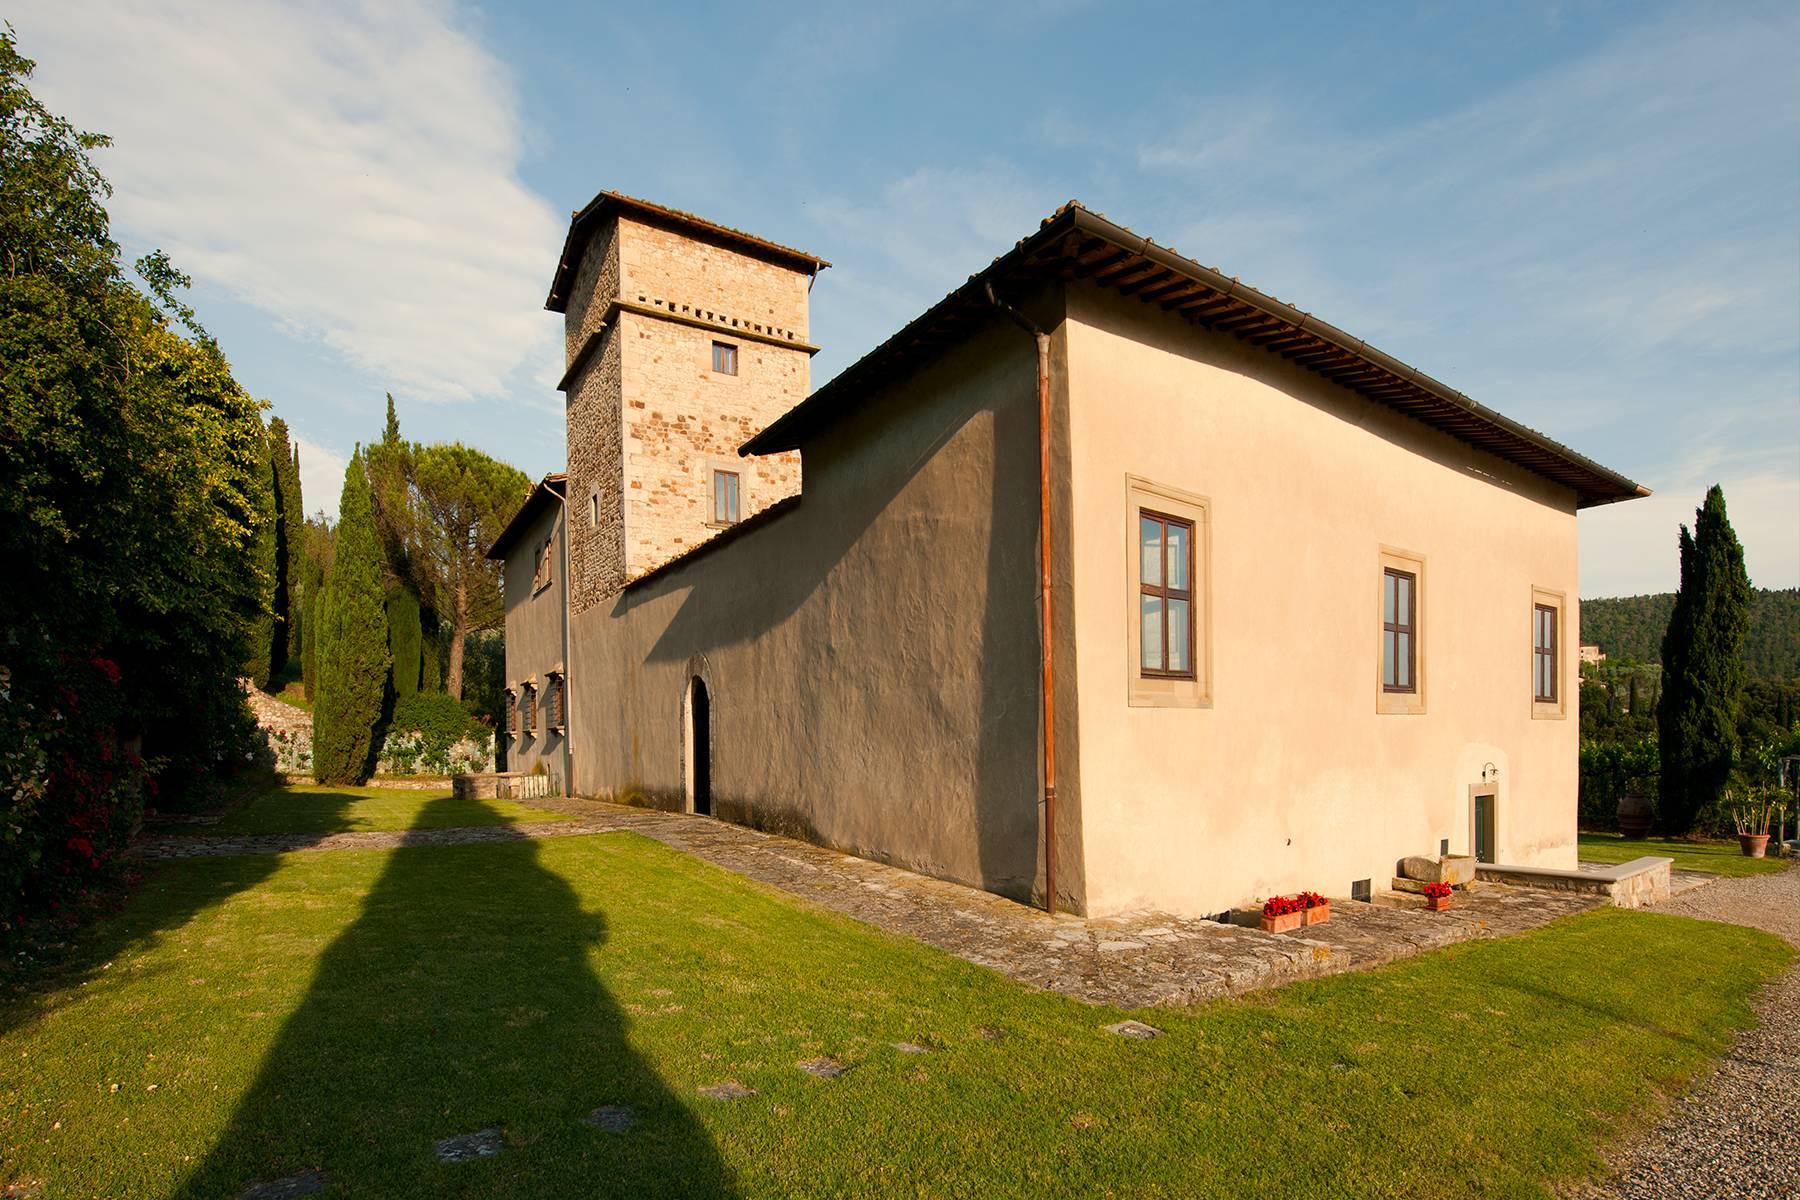 Grande villa padronale d'epoca nella più rinomata zona olearia vicino a Firenze - 26